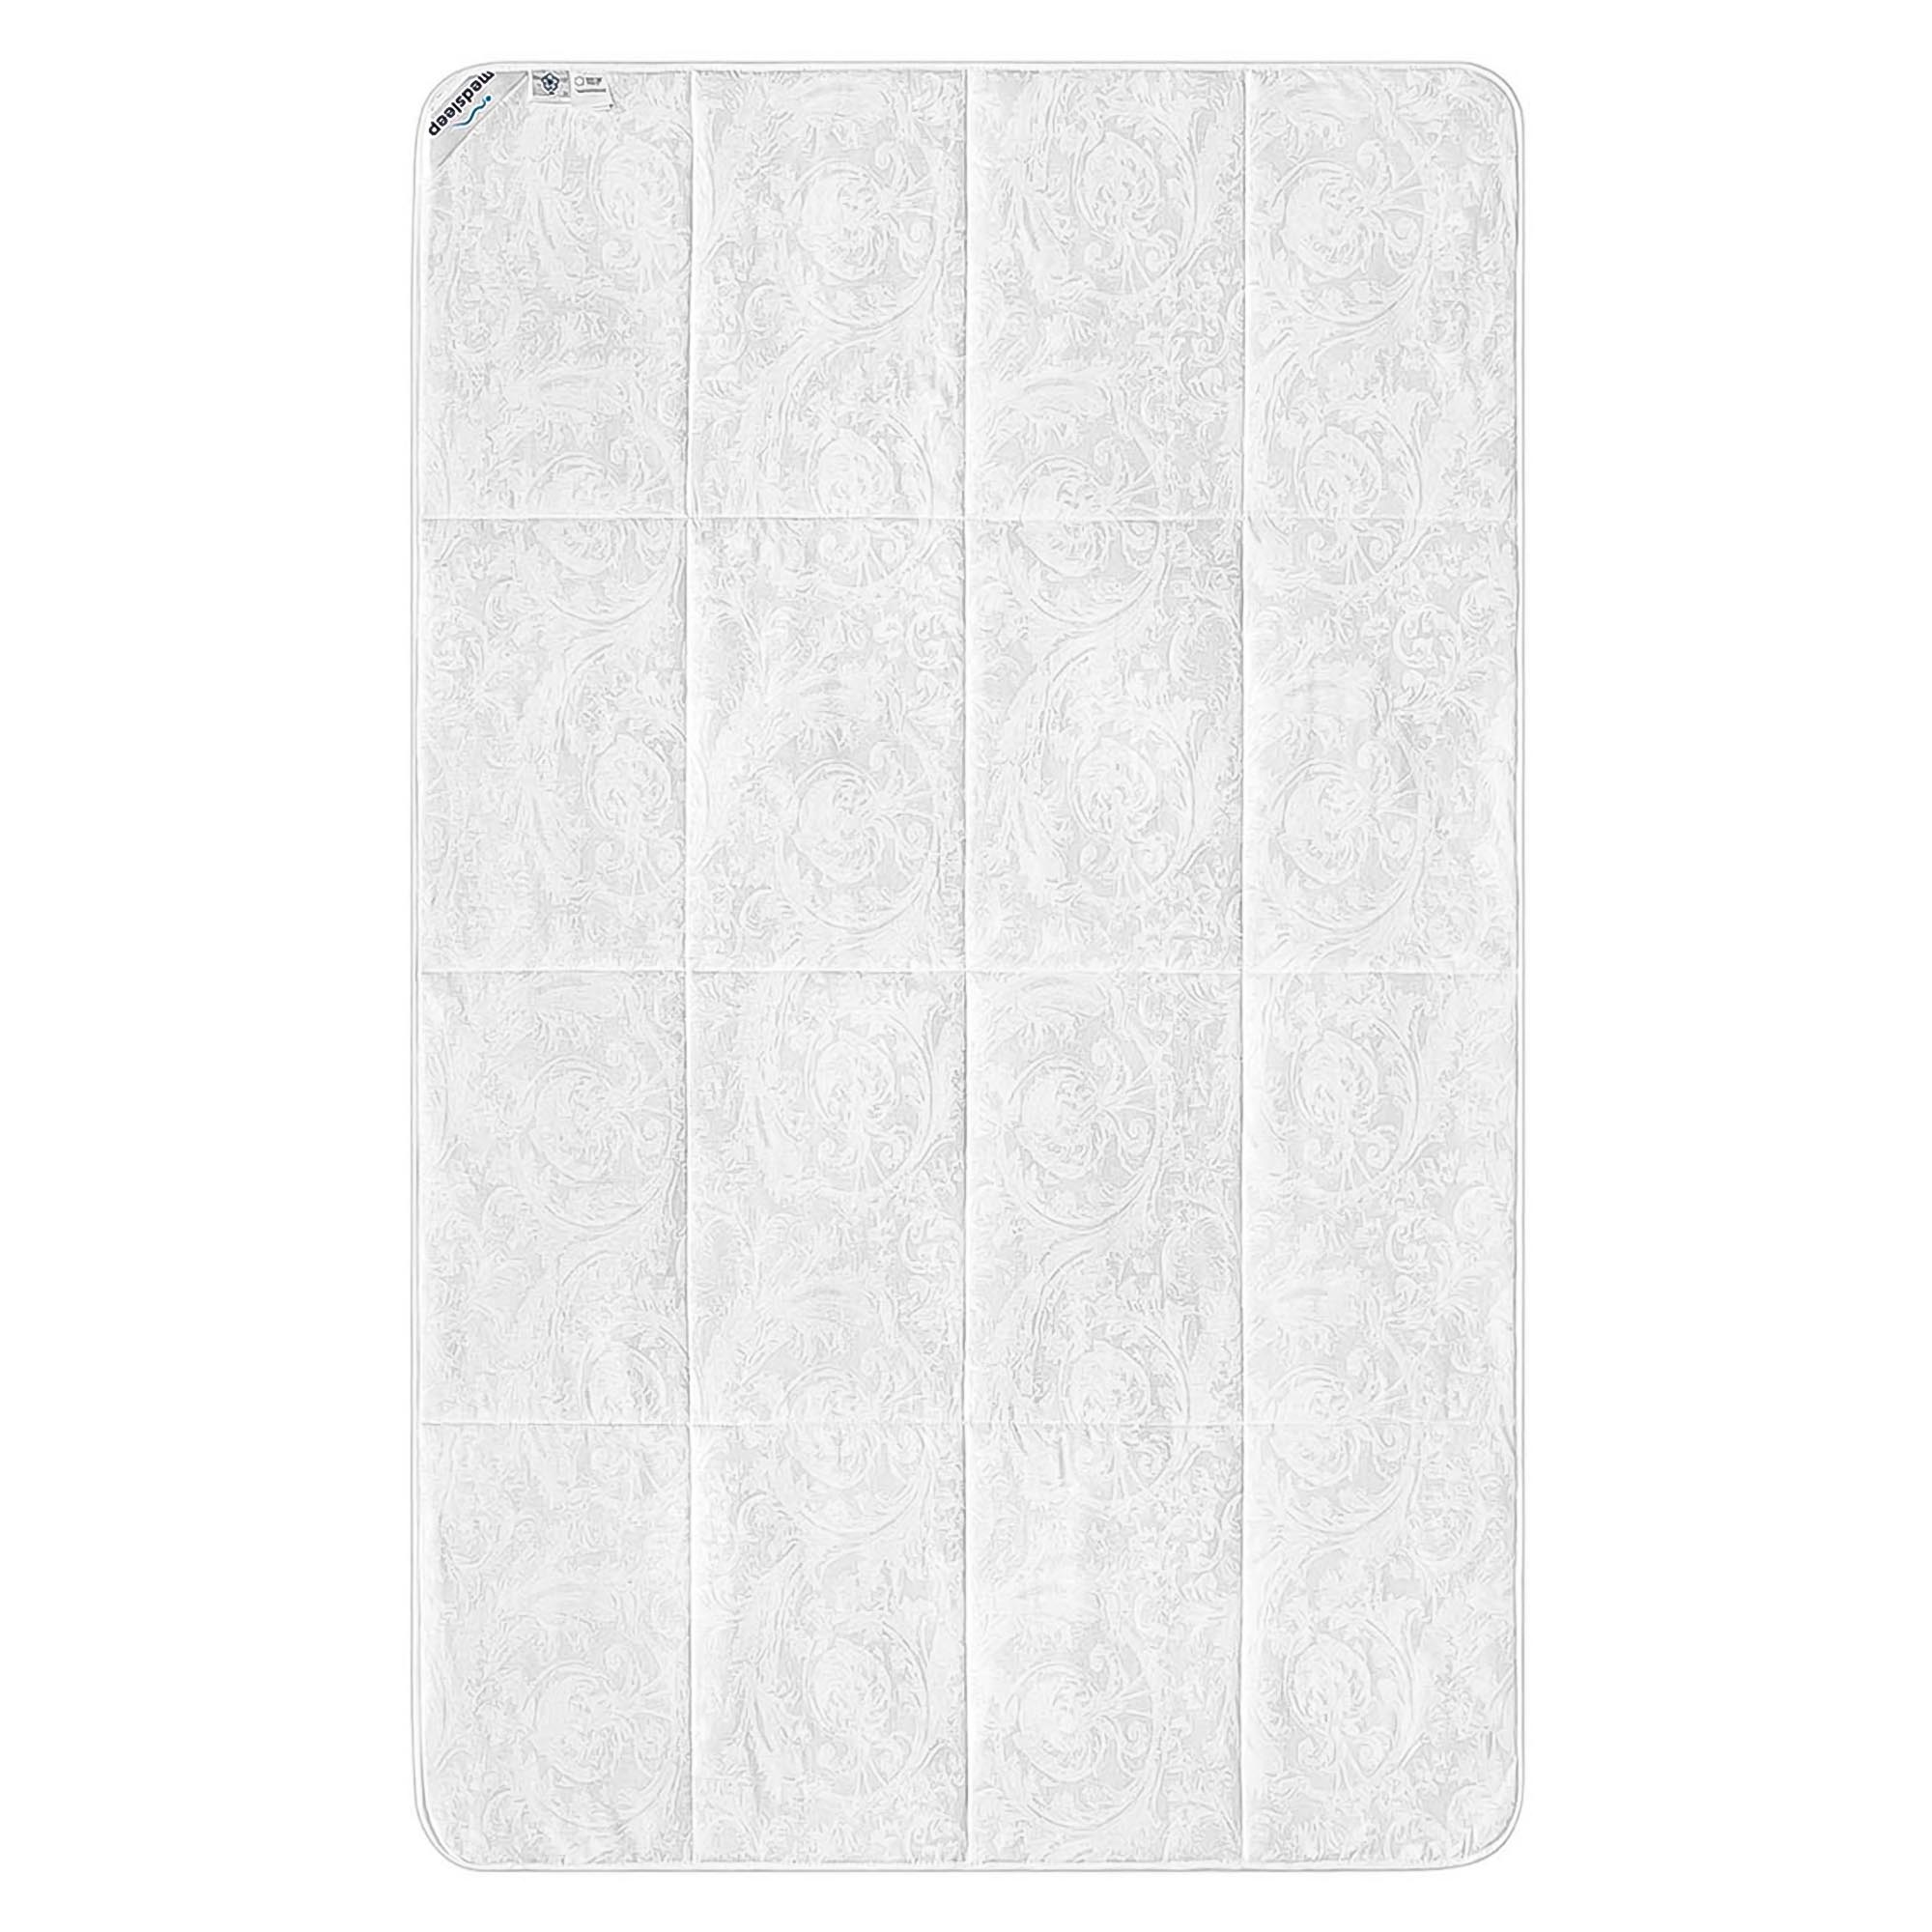 Одеяло Medsleep Skylor белое 175х200 см, цвет белый - фото 2